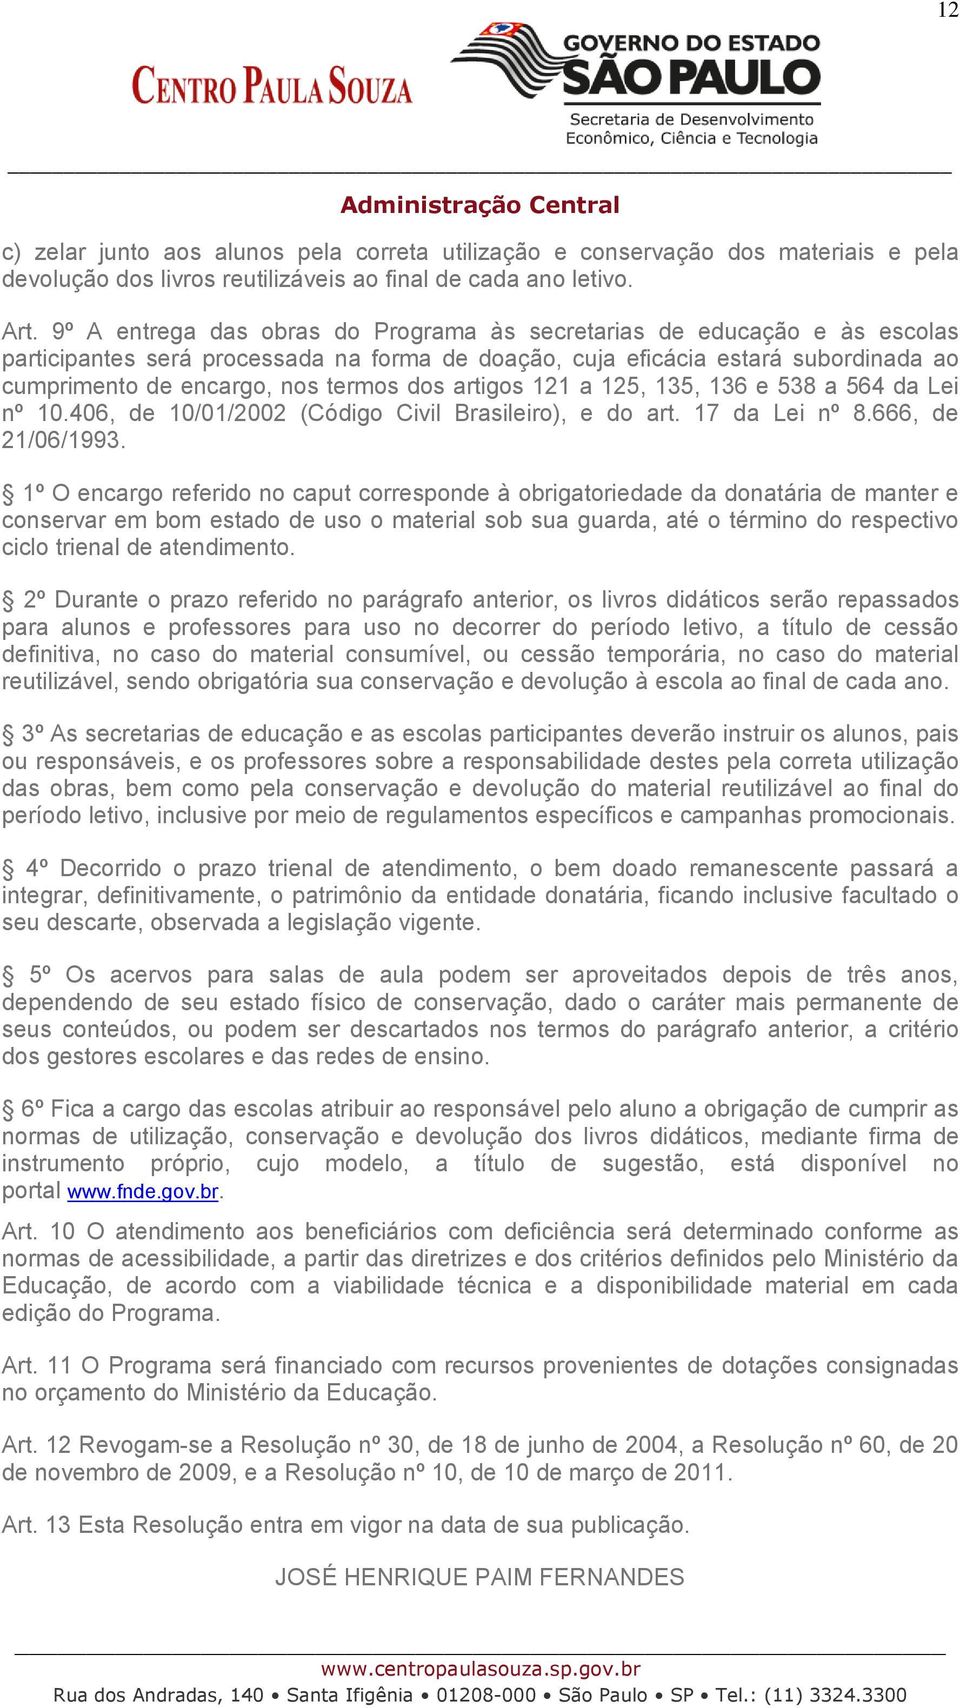 artigos 121 a 125, 135, 136 e 538 a 564 da Lei nº 10.406, de 10/01/2002 (Código Civil Brasileiro), e do art. 17 da Lei nº 8.666, de 21/06/1993.